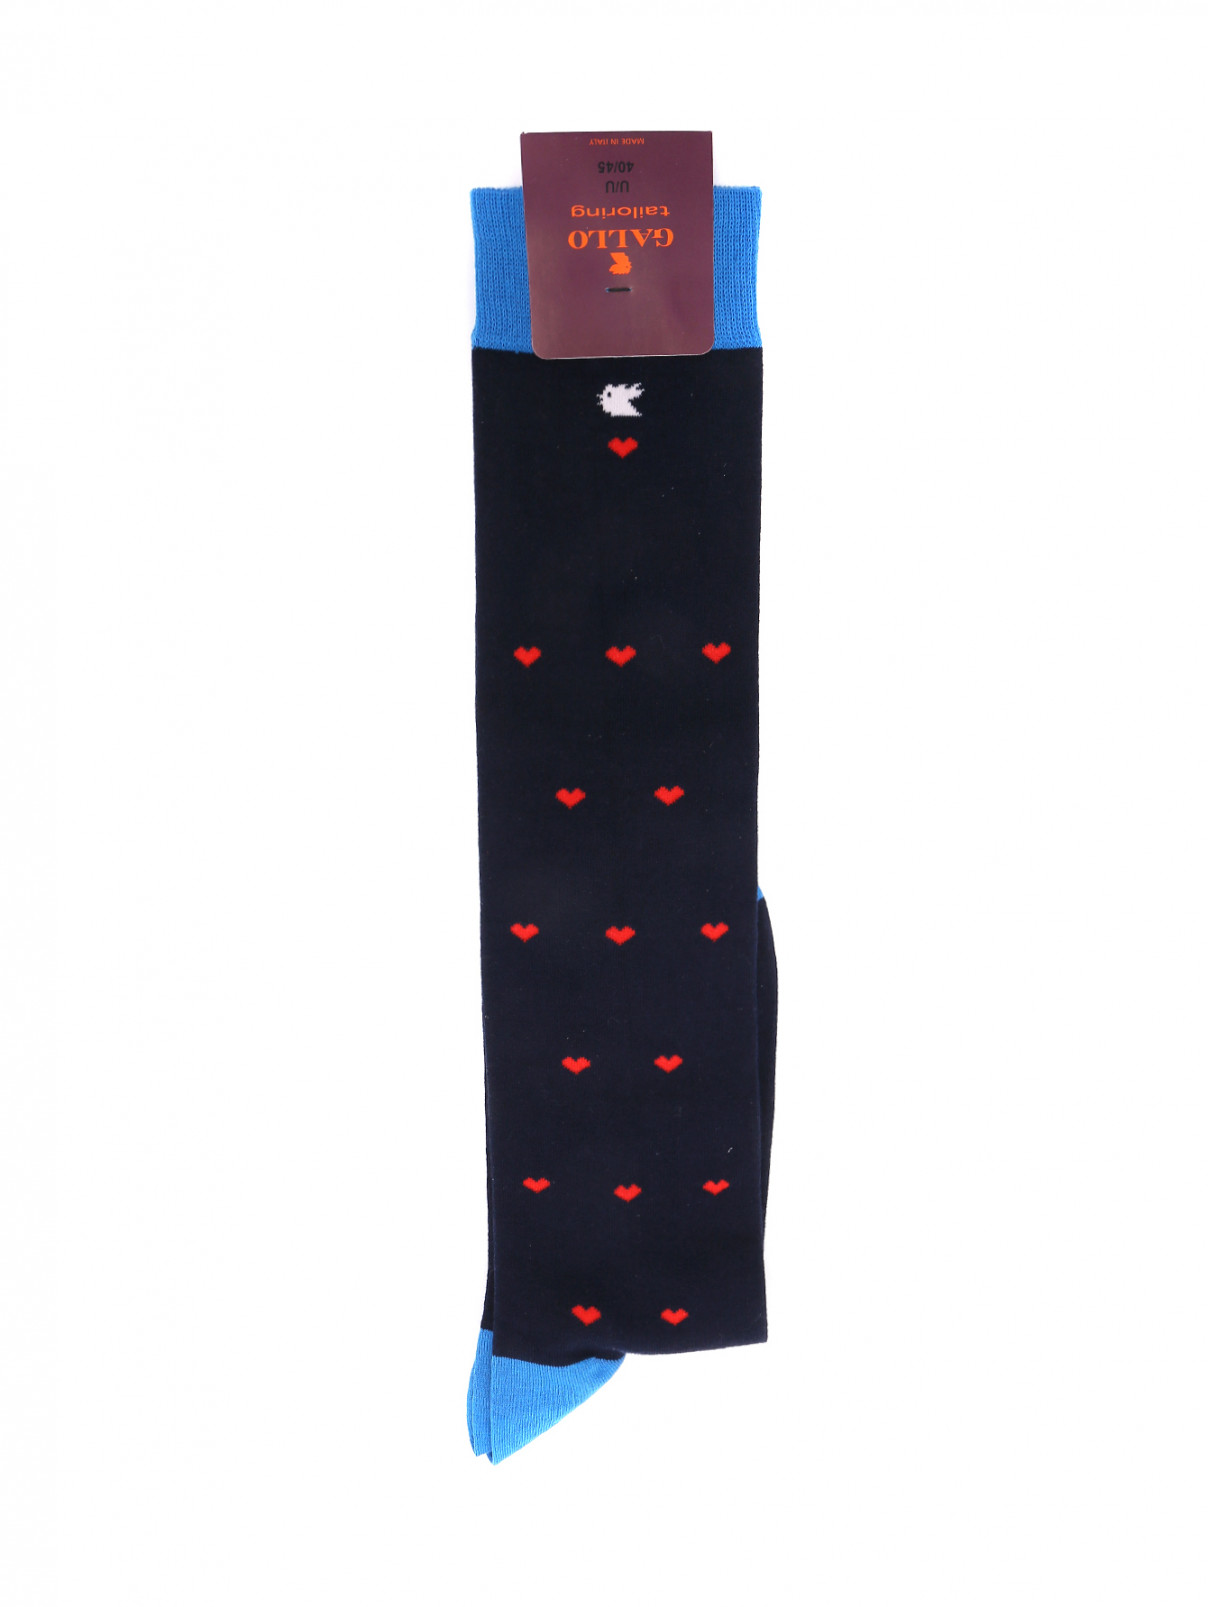 Носки из хлопка с узором Gallo  –  Общий вид  – Цвет:  Синий